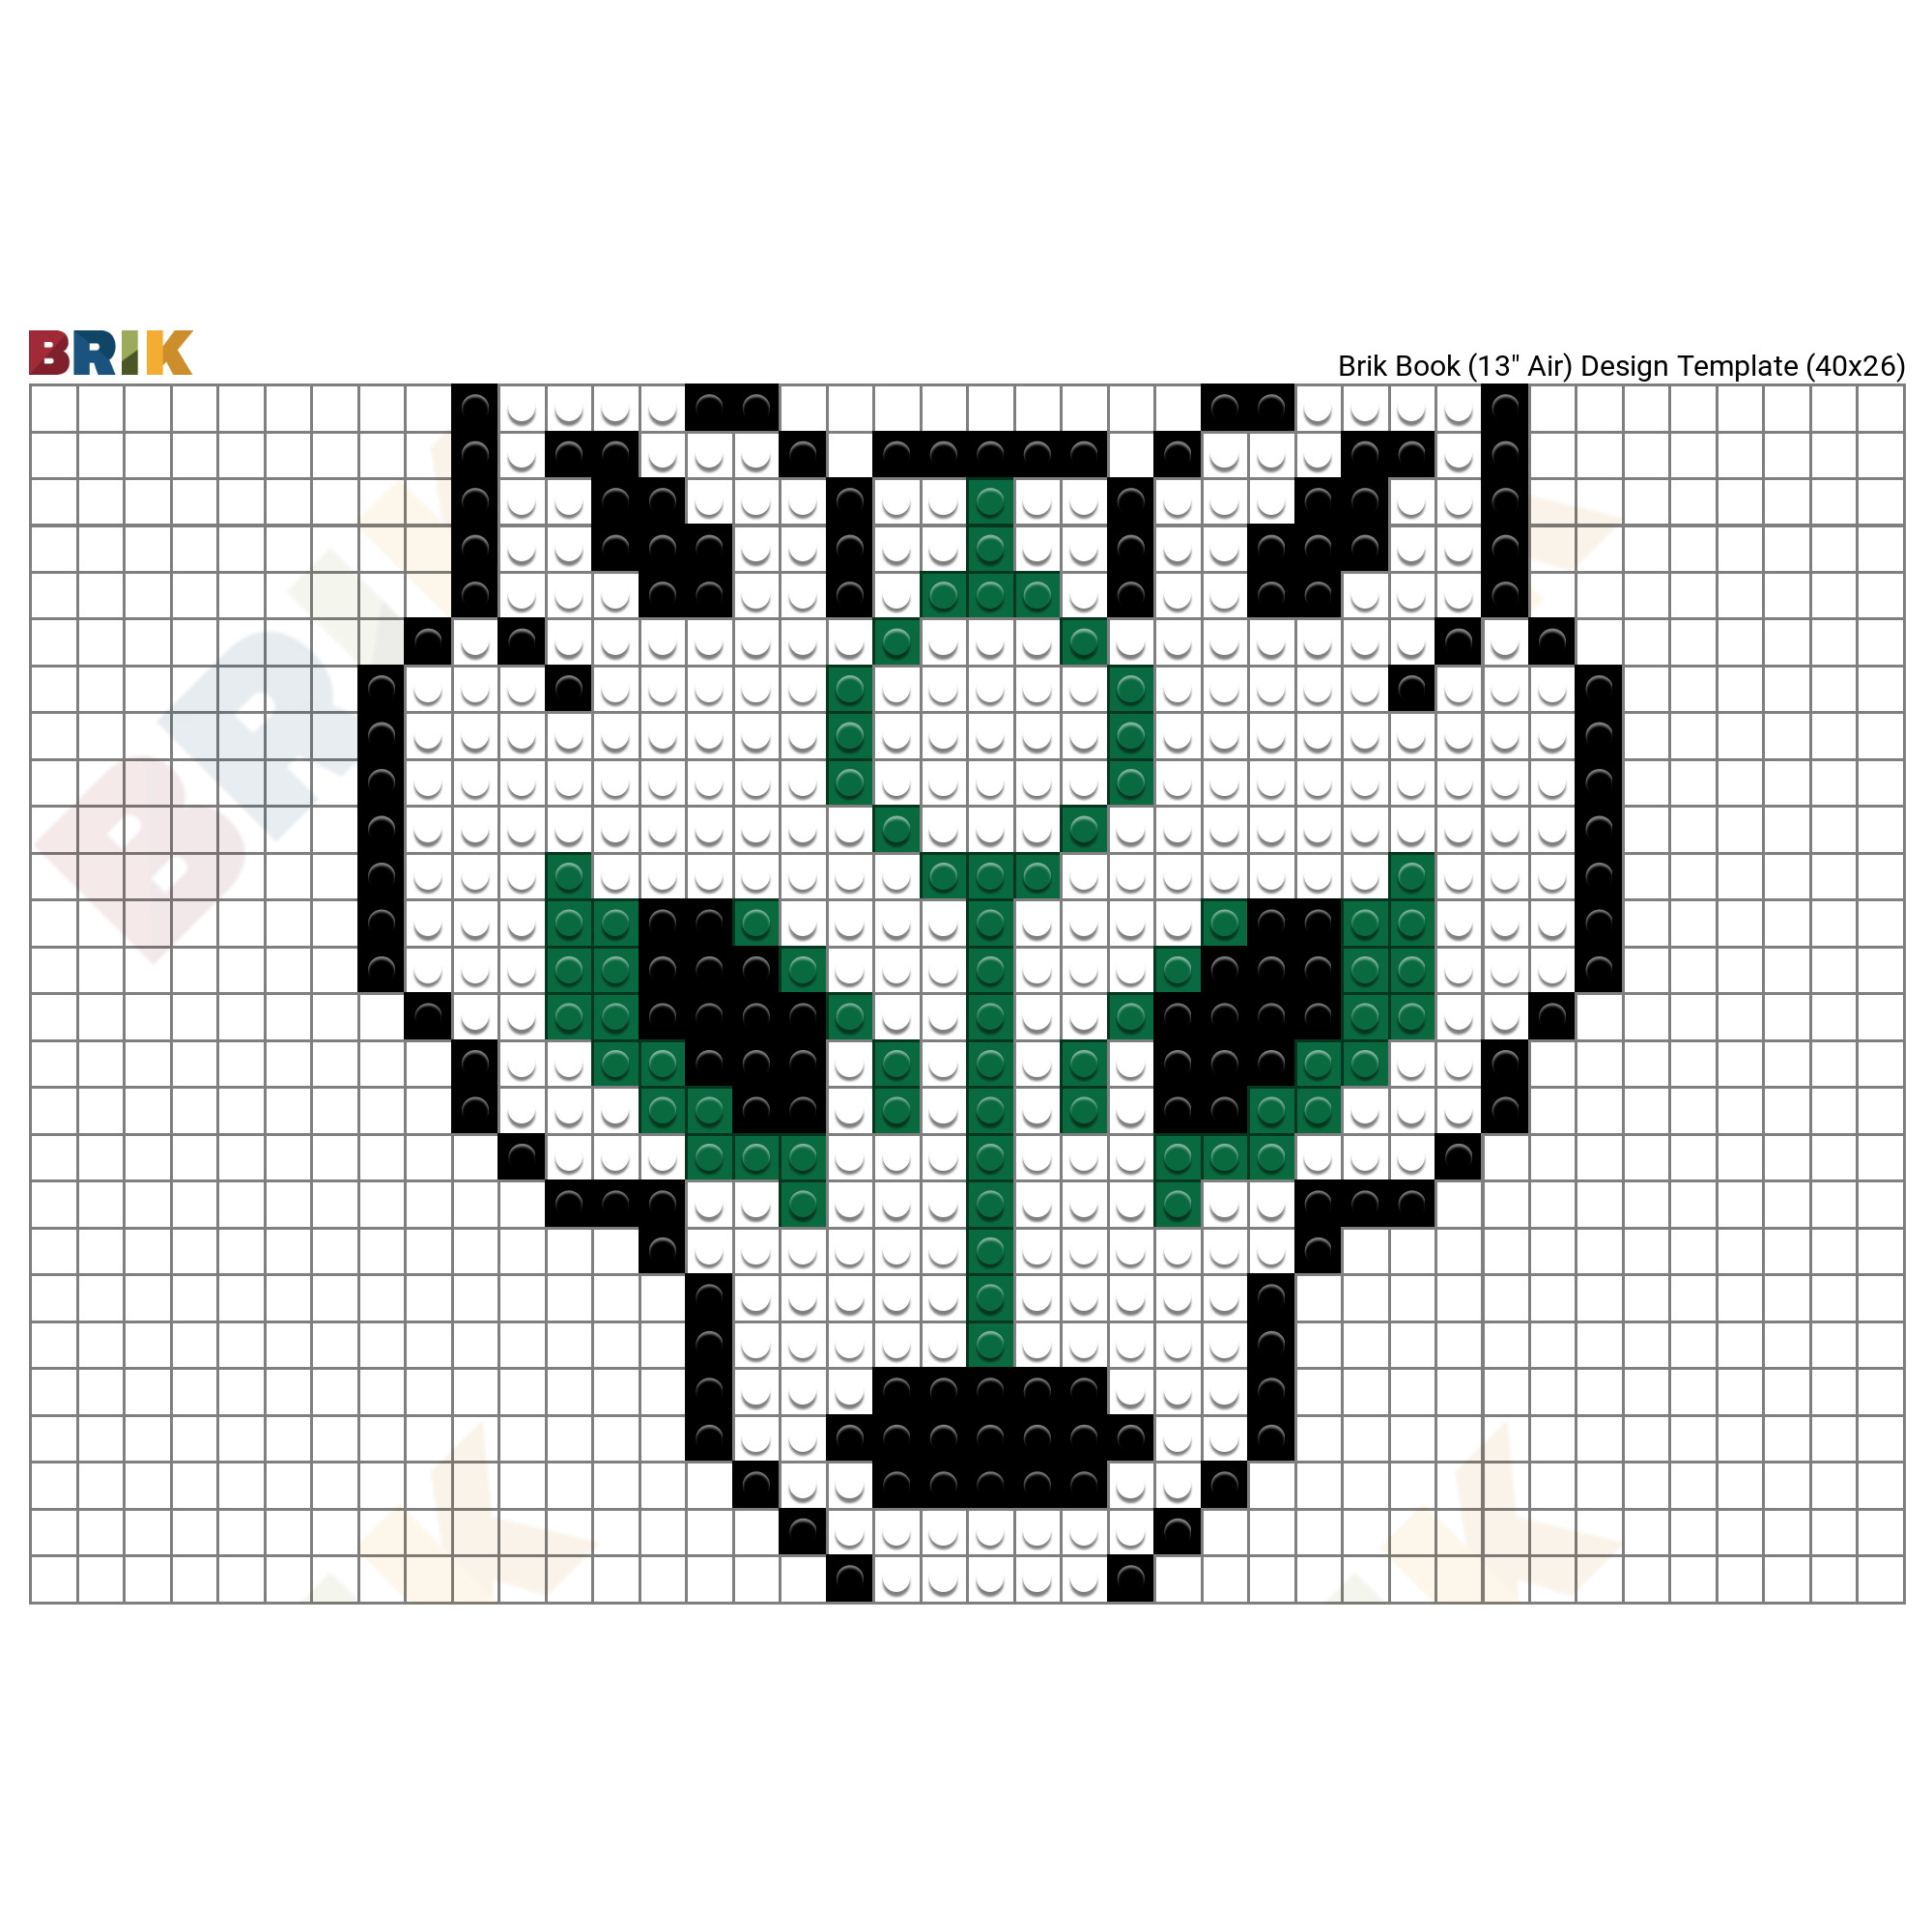 wolf head pixel art